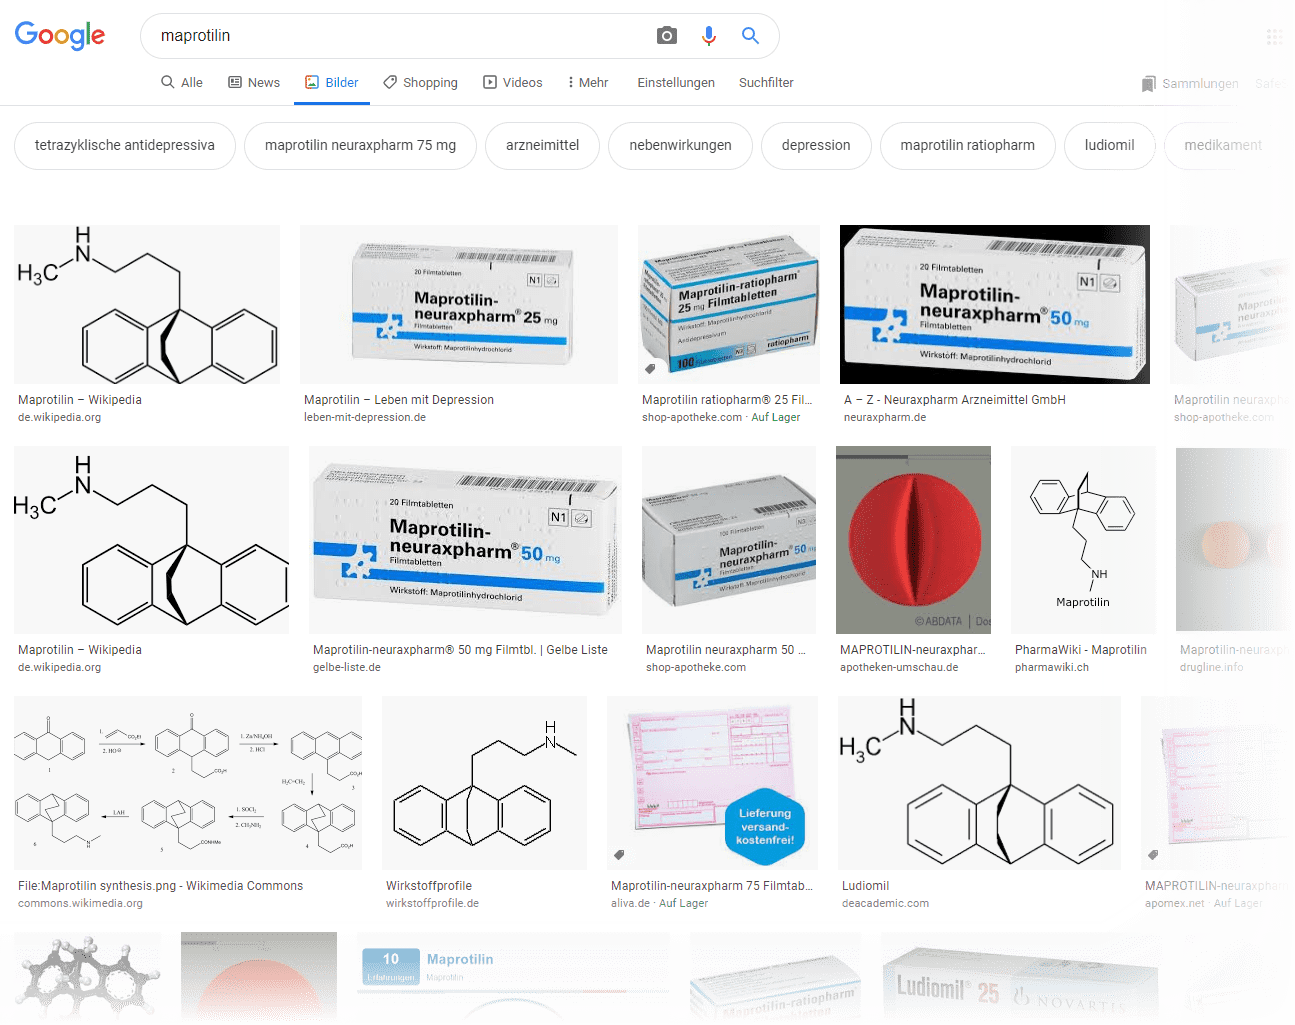 Maprotilin / Ludiomil - die Google Bildersuche zeigt Tabletten-Packungen verschiedener Hersteller (Screenshot 12.05.2020)